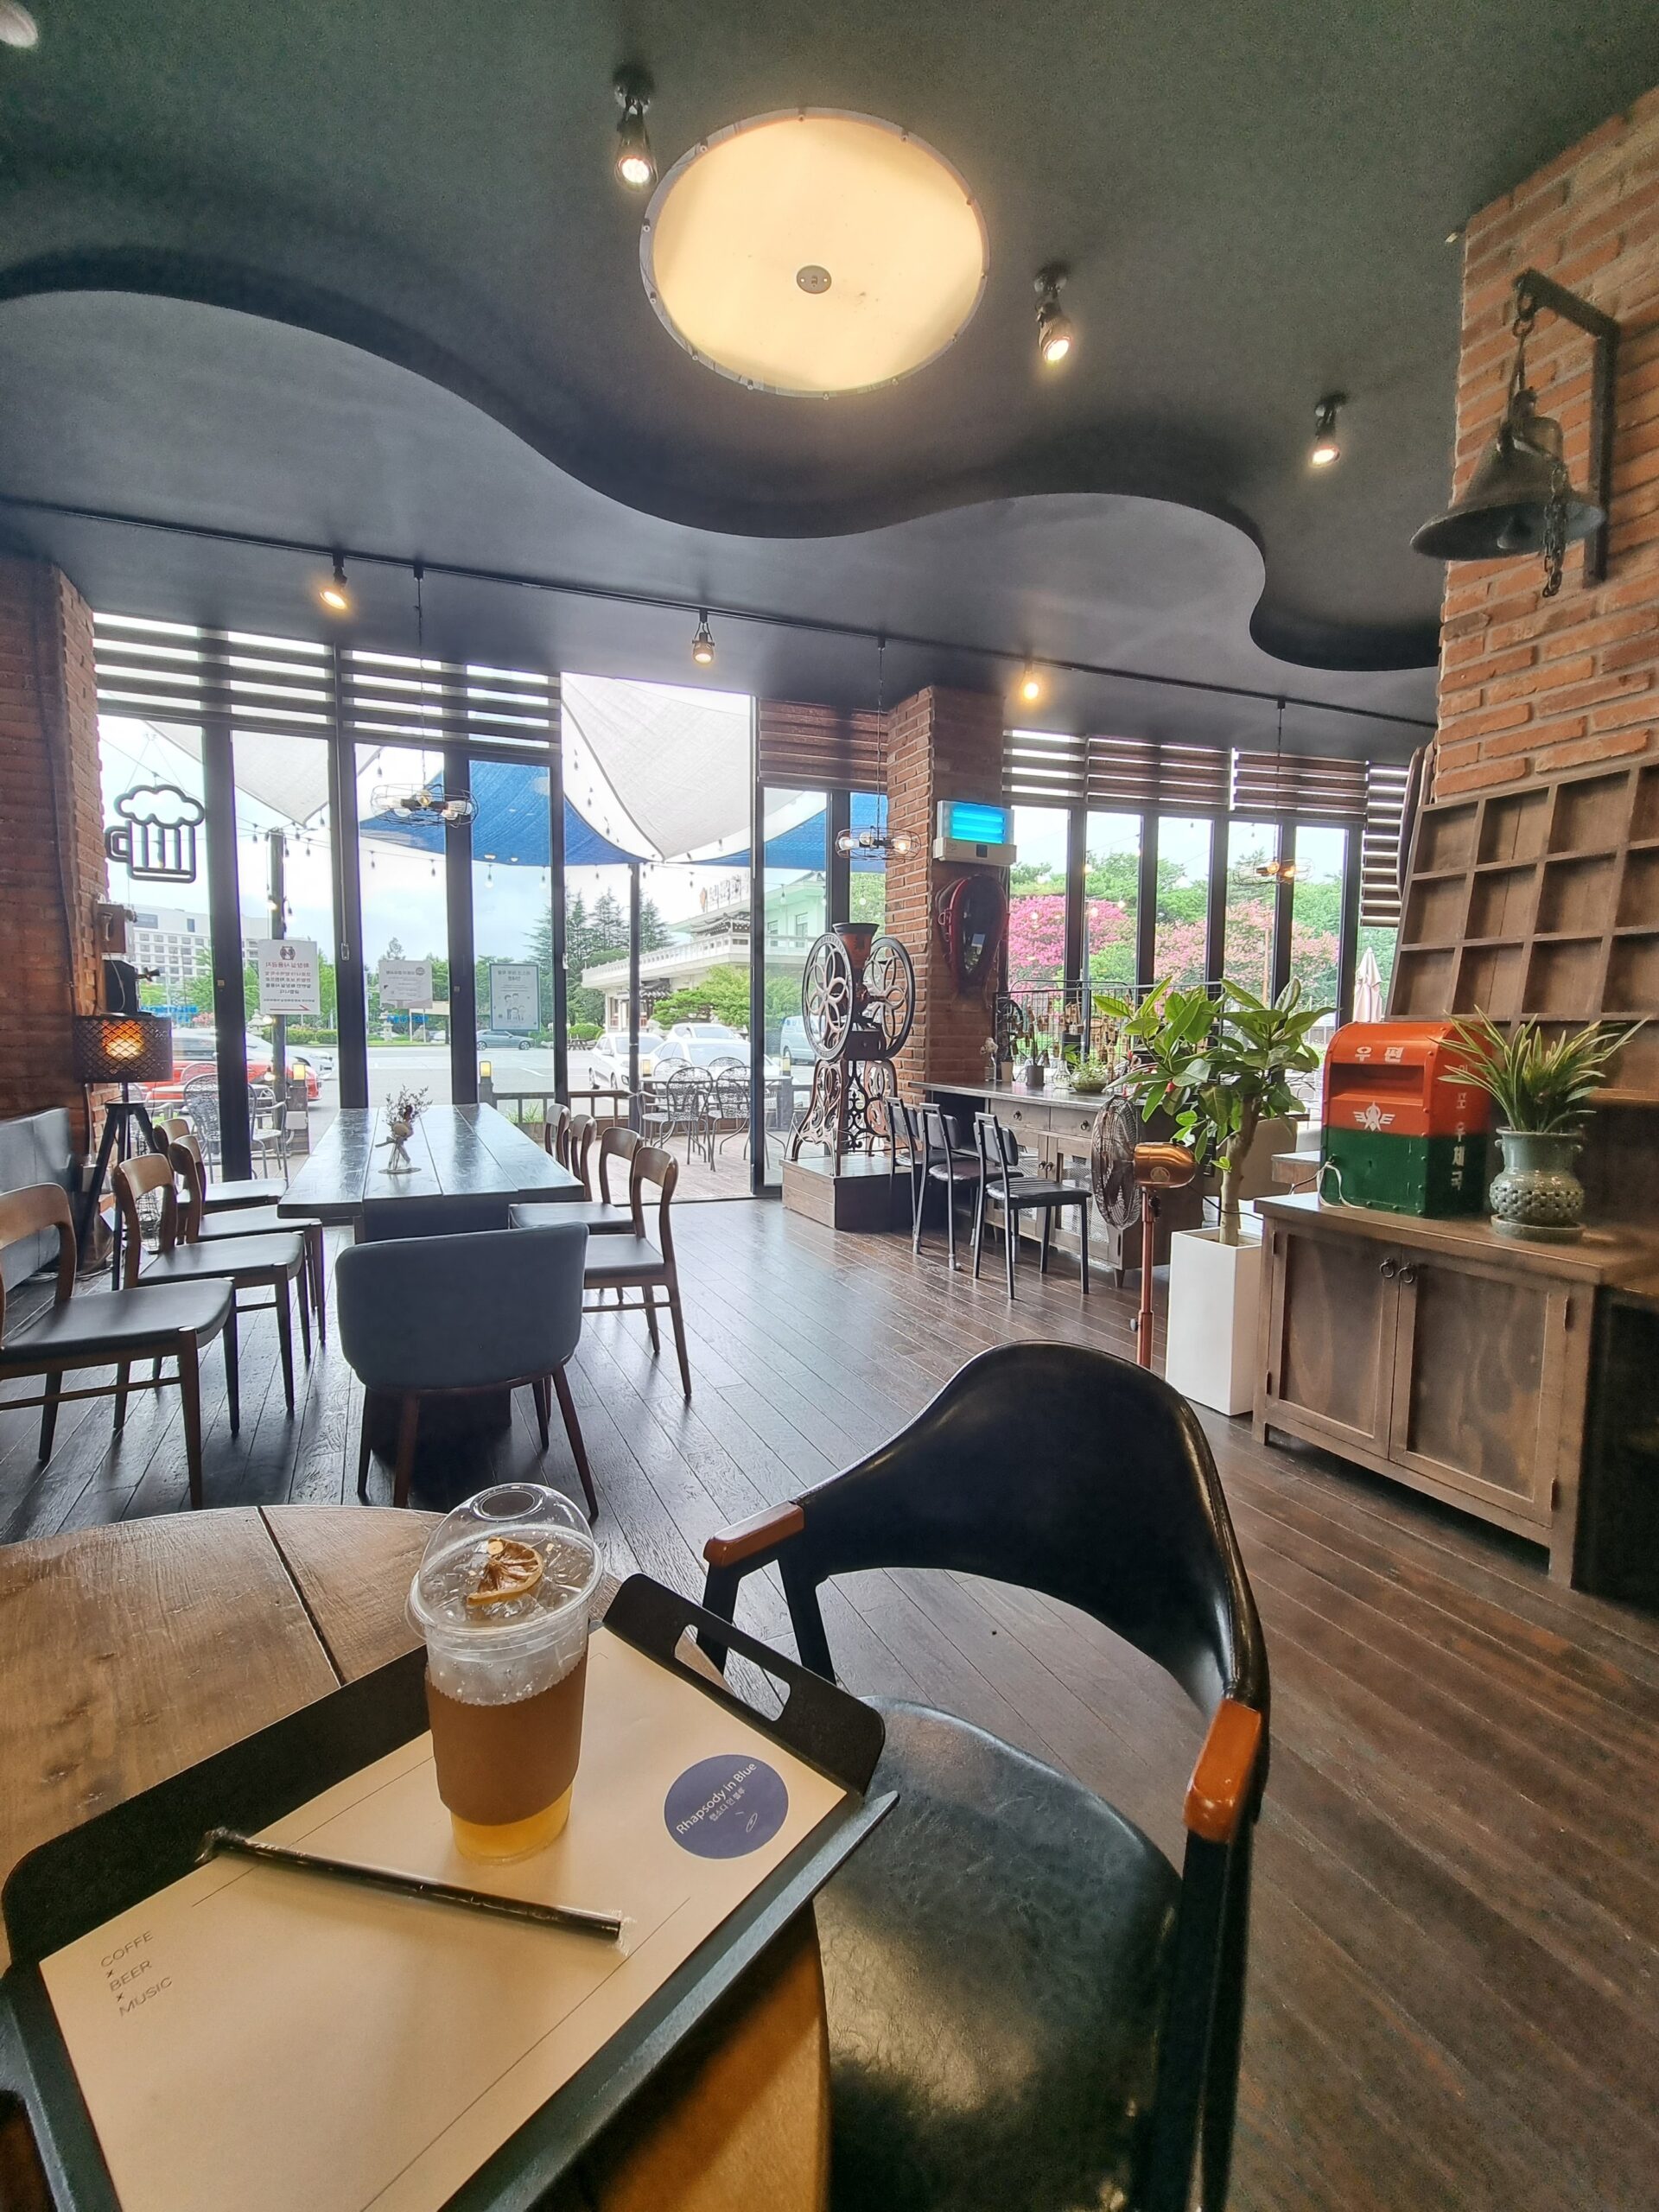 20220728_151855-1-scaled Cafe Hopping in Gyeongju: 10 Yummy Cafes Tour